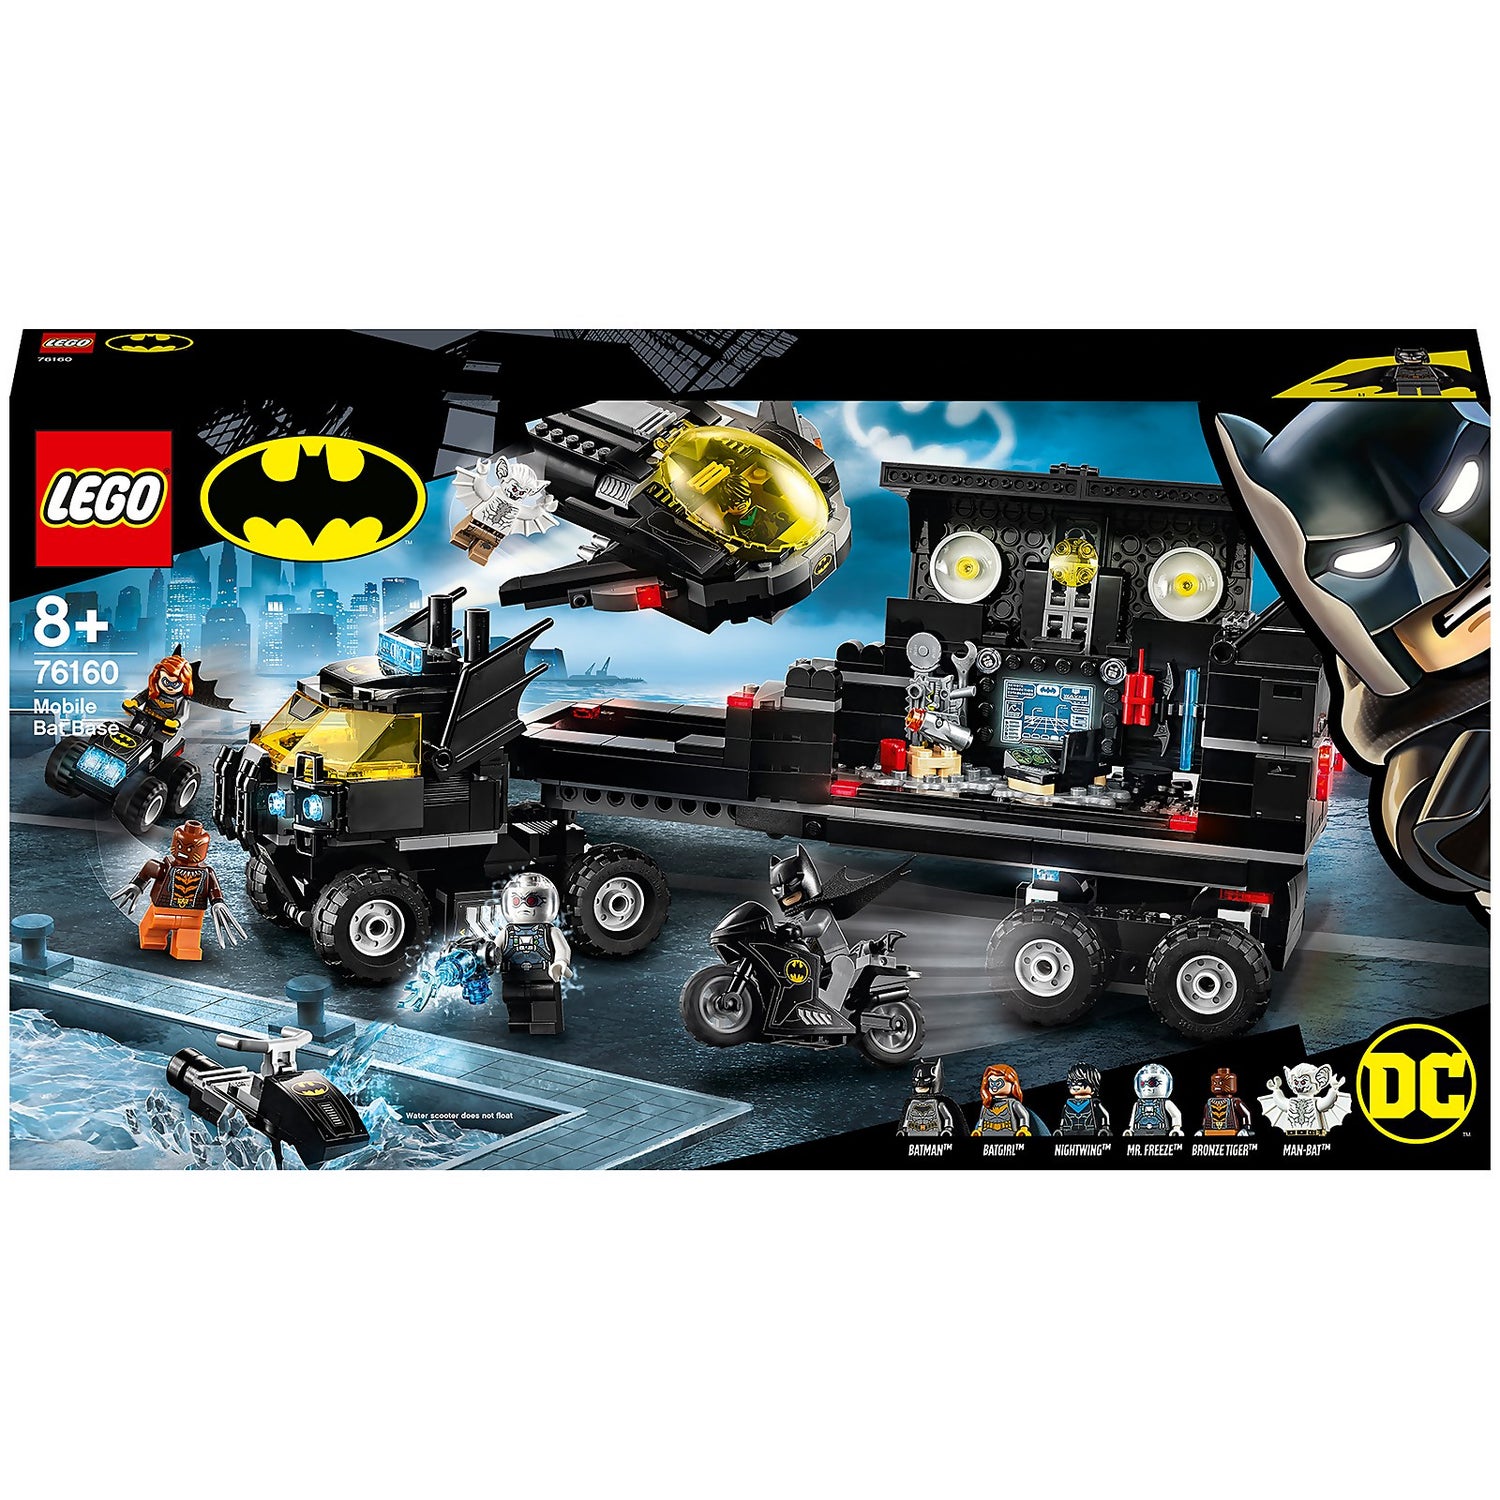 Risikabel farligt Anvendelse LEGO DC Batman Mobile Bat Base Batcave Truck Toy (76160) Toys - Zavvi US